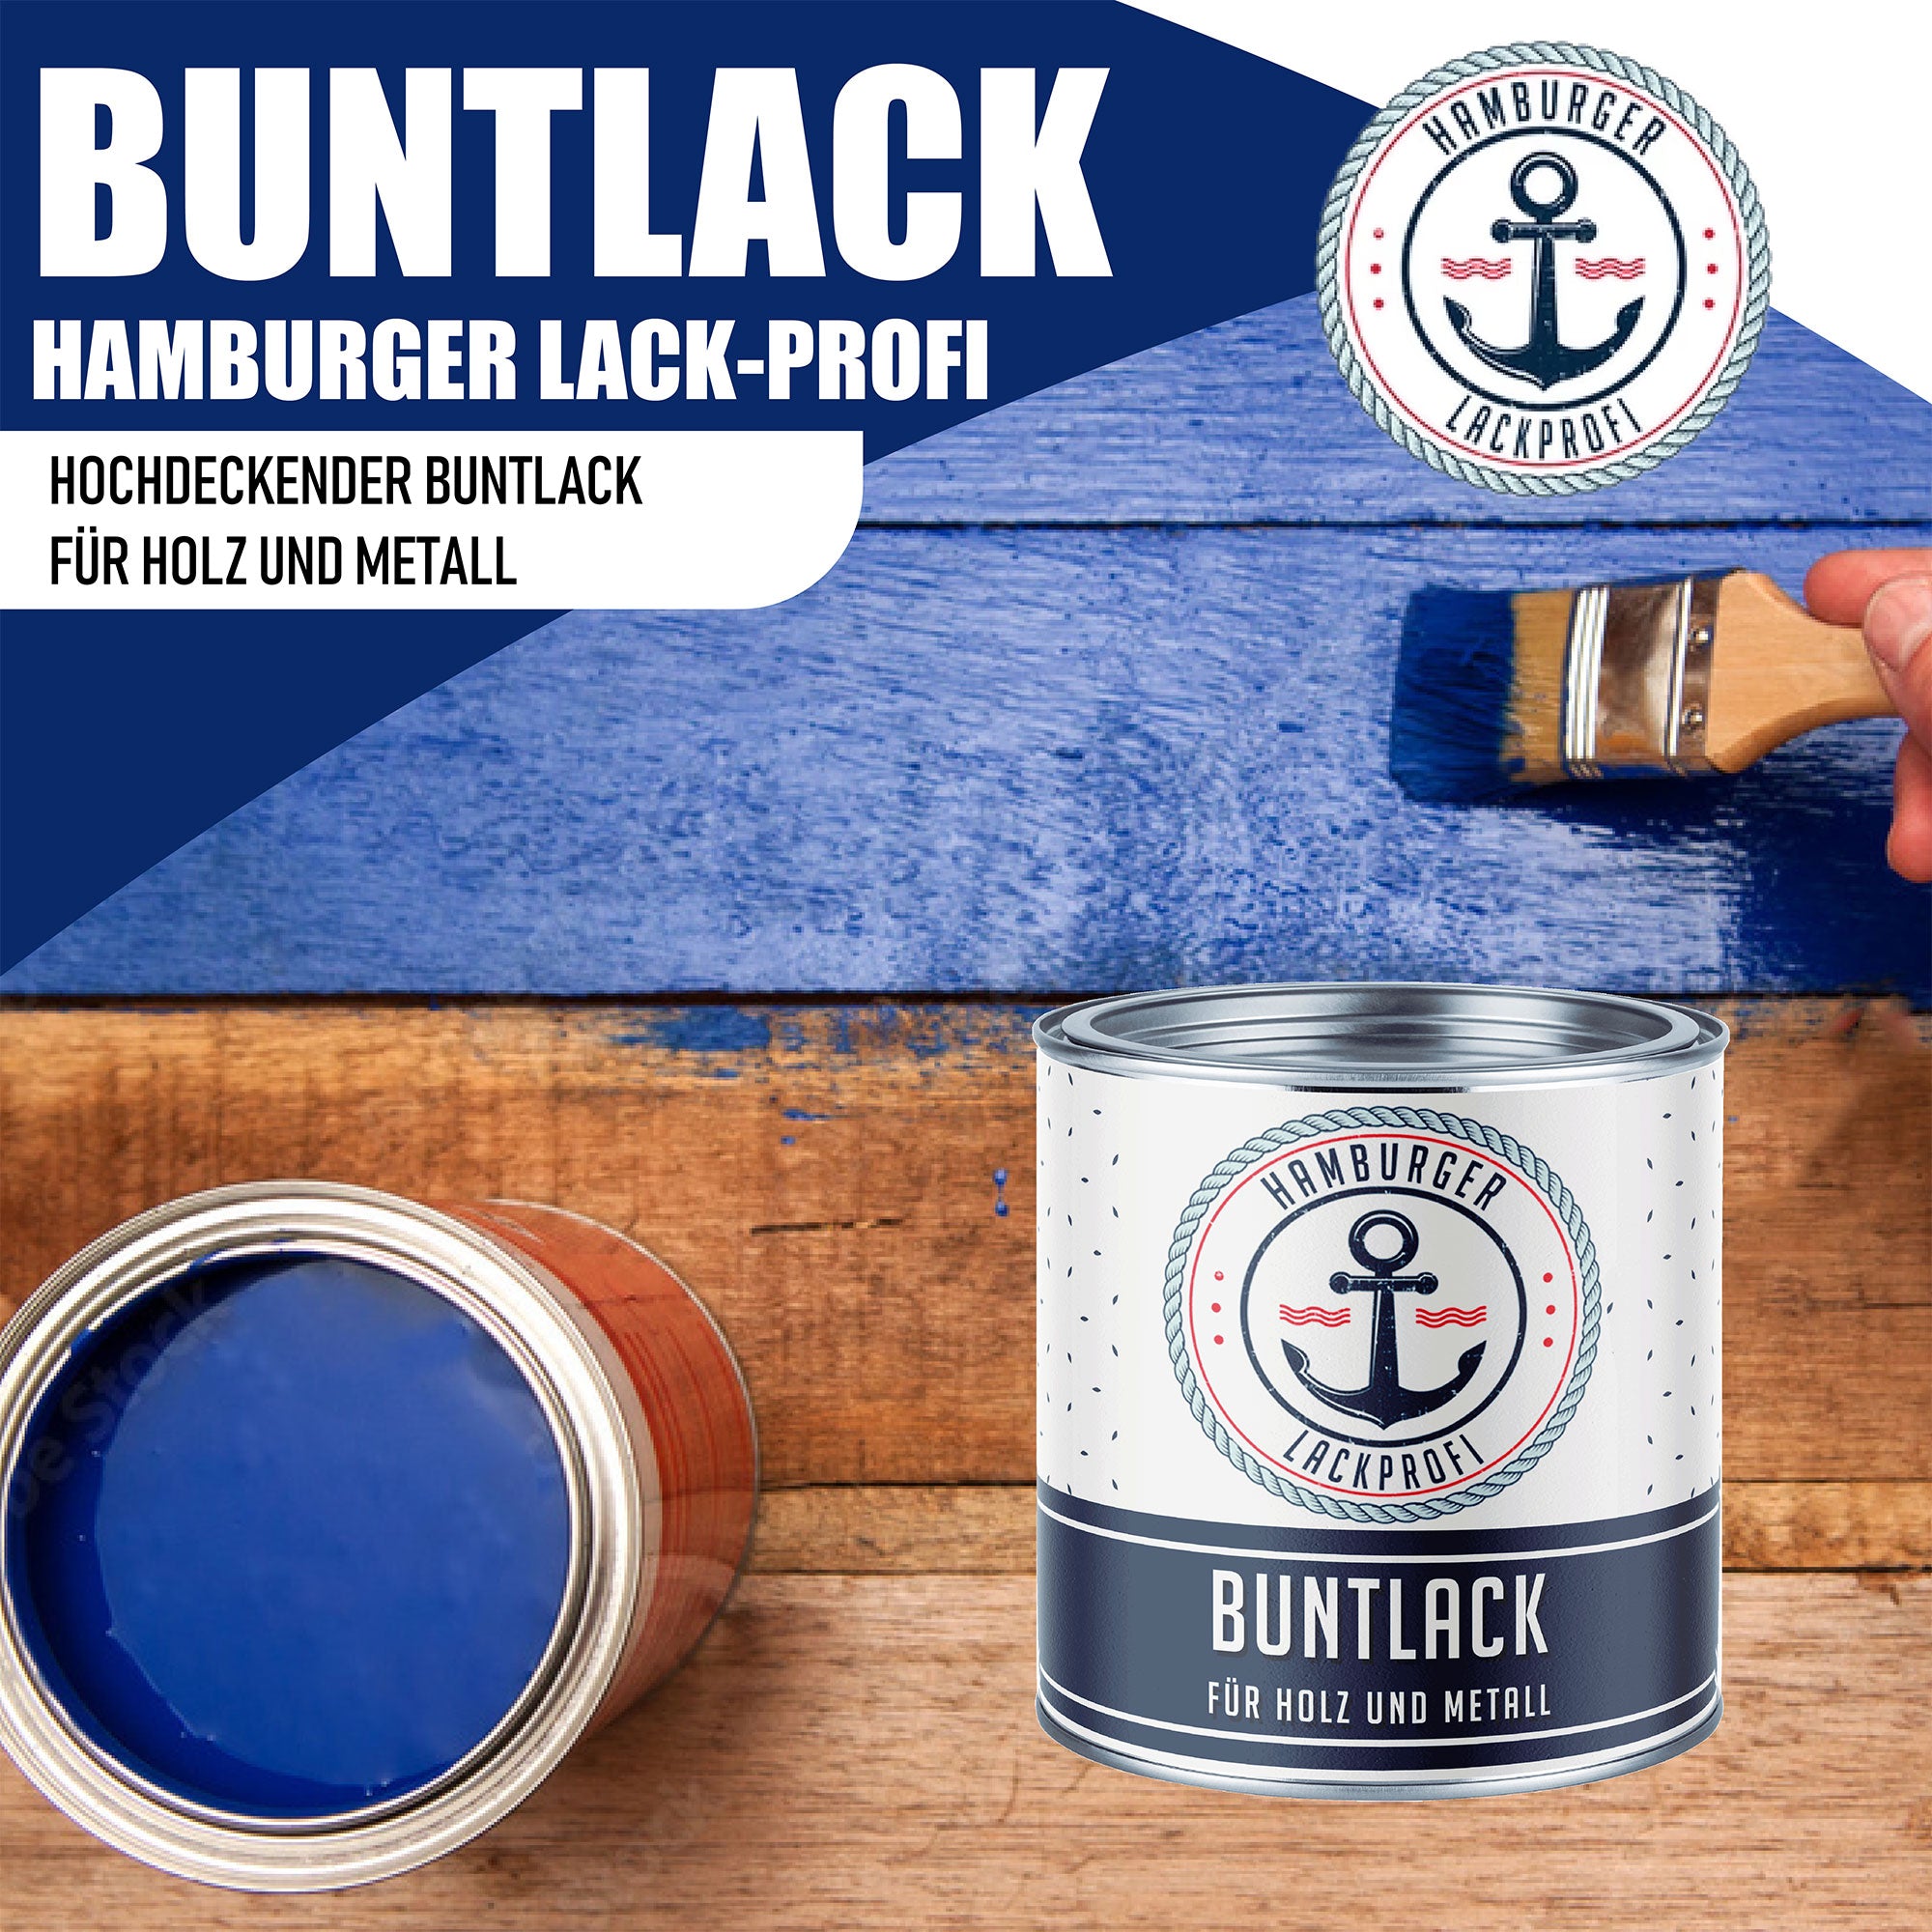 Hamburger Lack-Profi Buntlack Honiggelb RAL 1005 - Robuster Kunstharzlack - Hamburger Lack-Profi